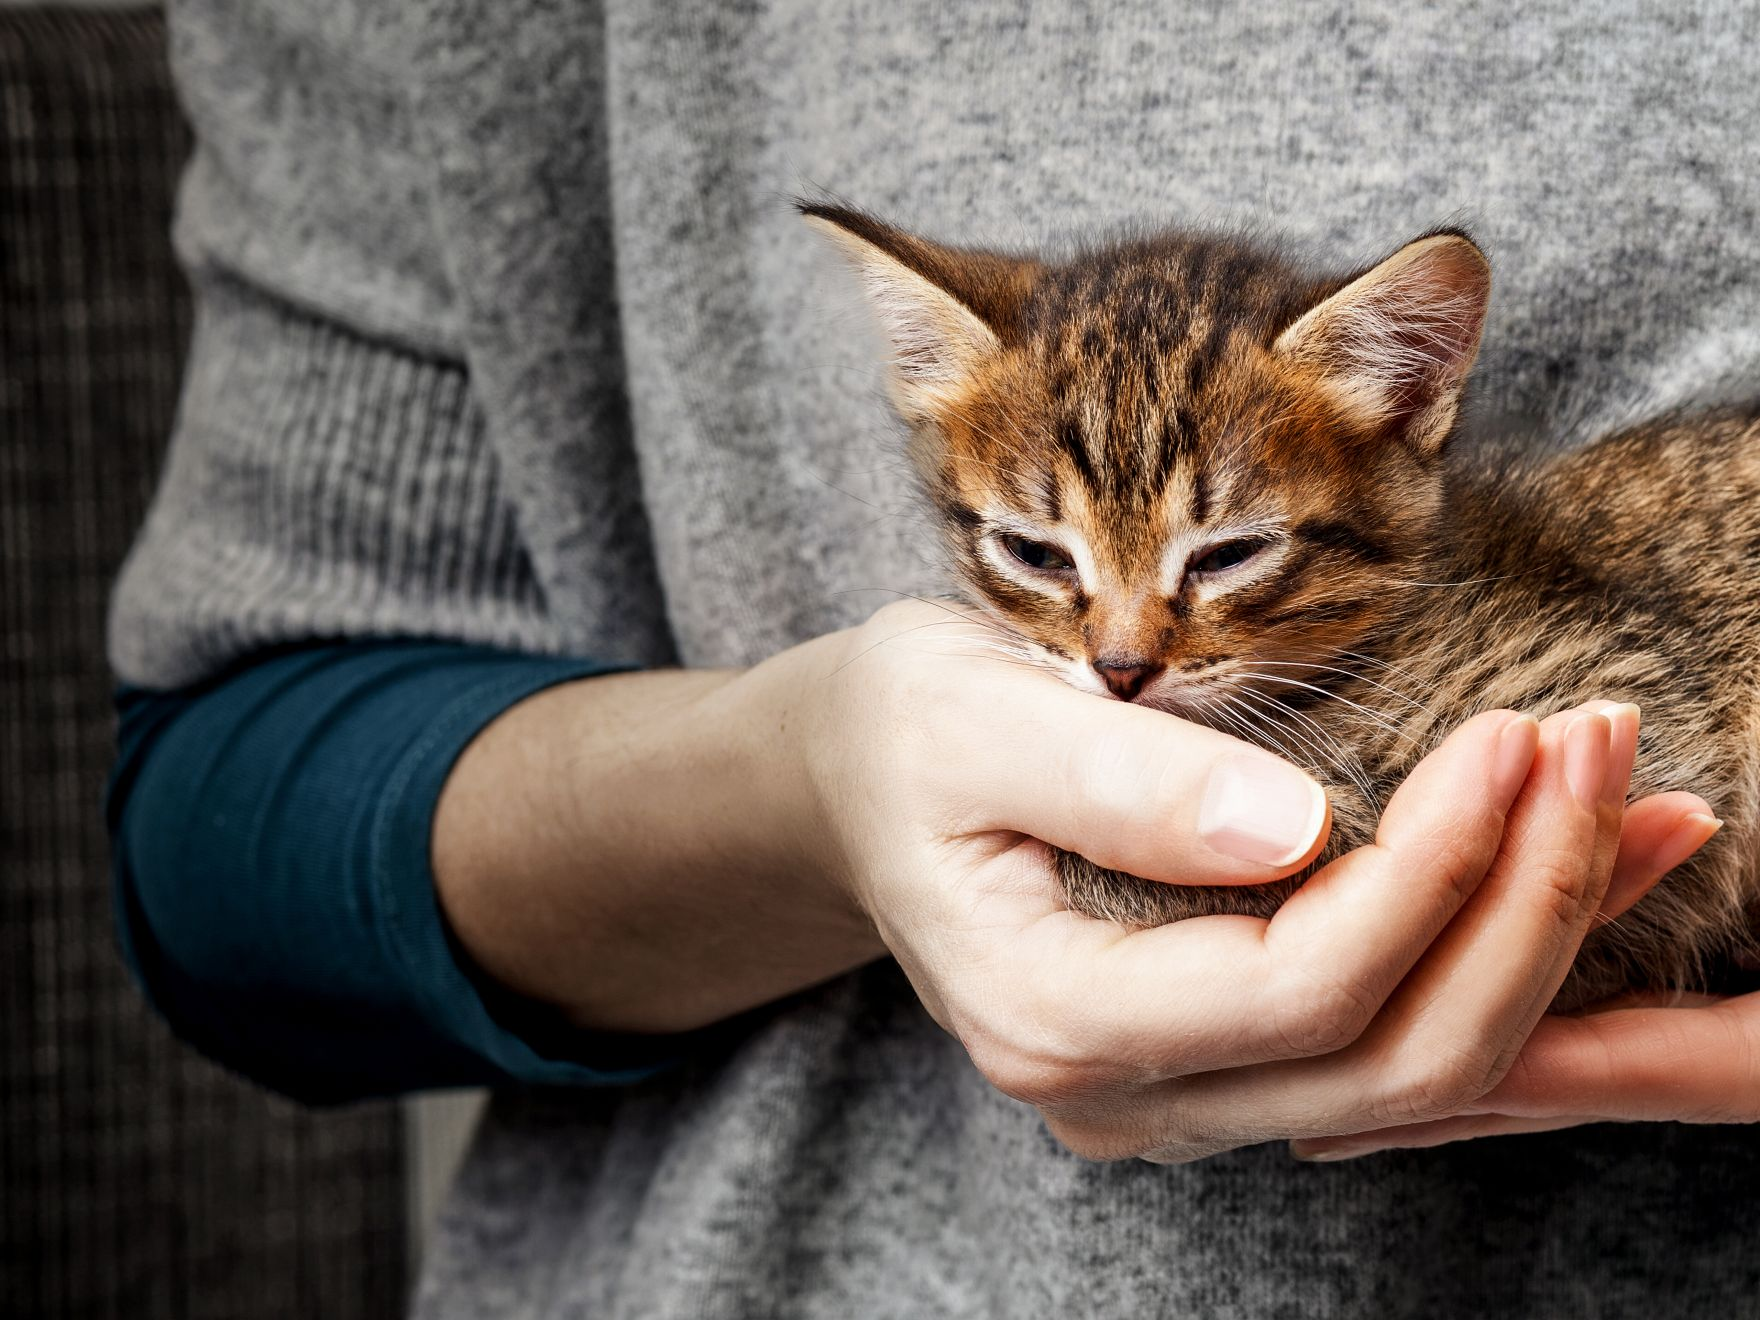 Brown Tabby Kitten Being Held by Owner in a Grey Top